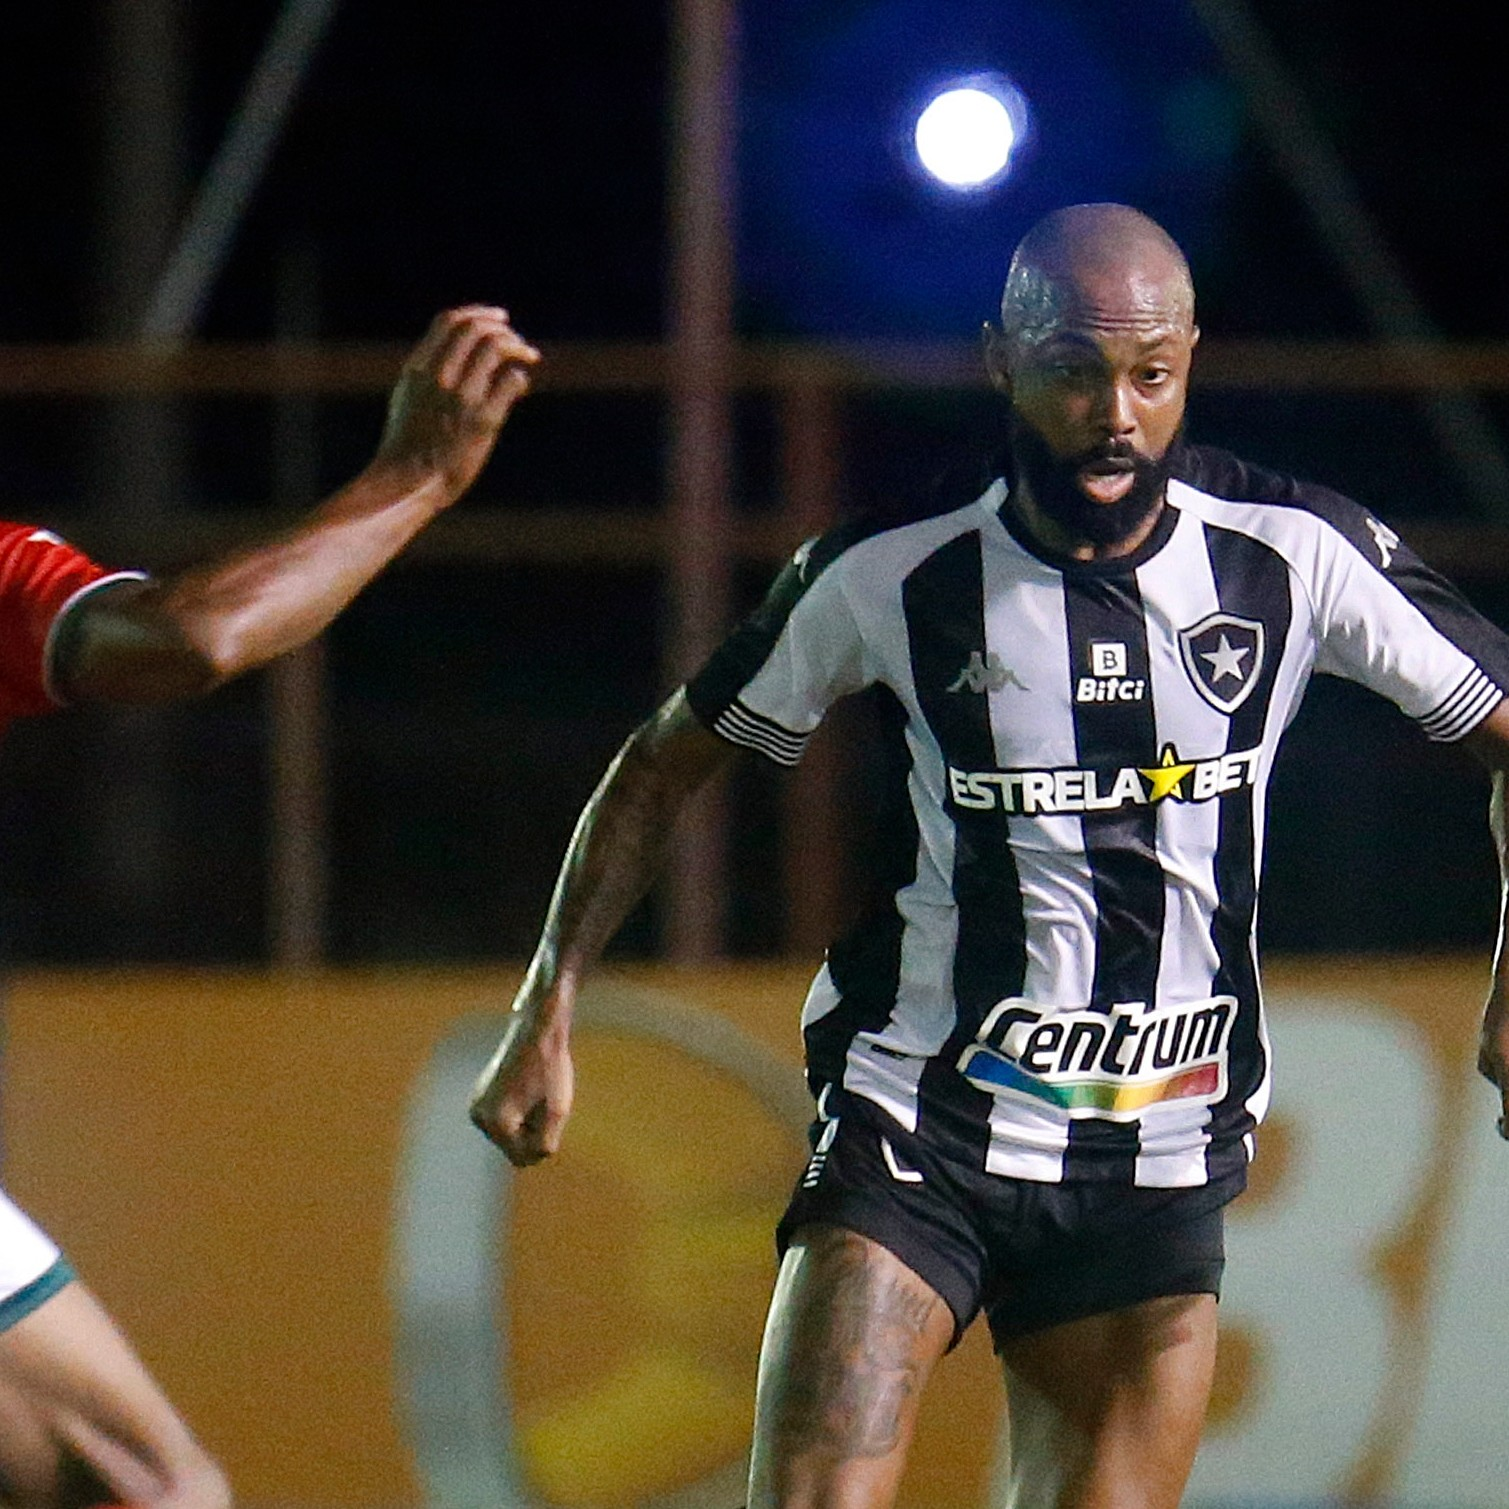 GE Botafogo #172 - Após péssima atuação contra a Portuguesa, quando chegam os reforços?